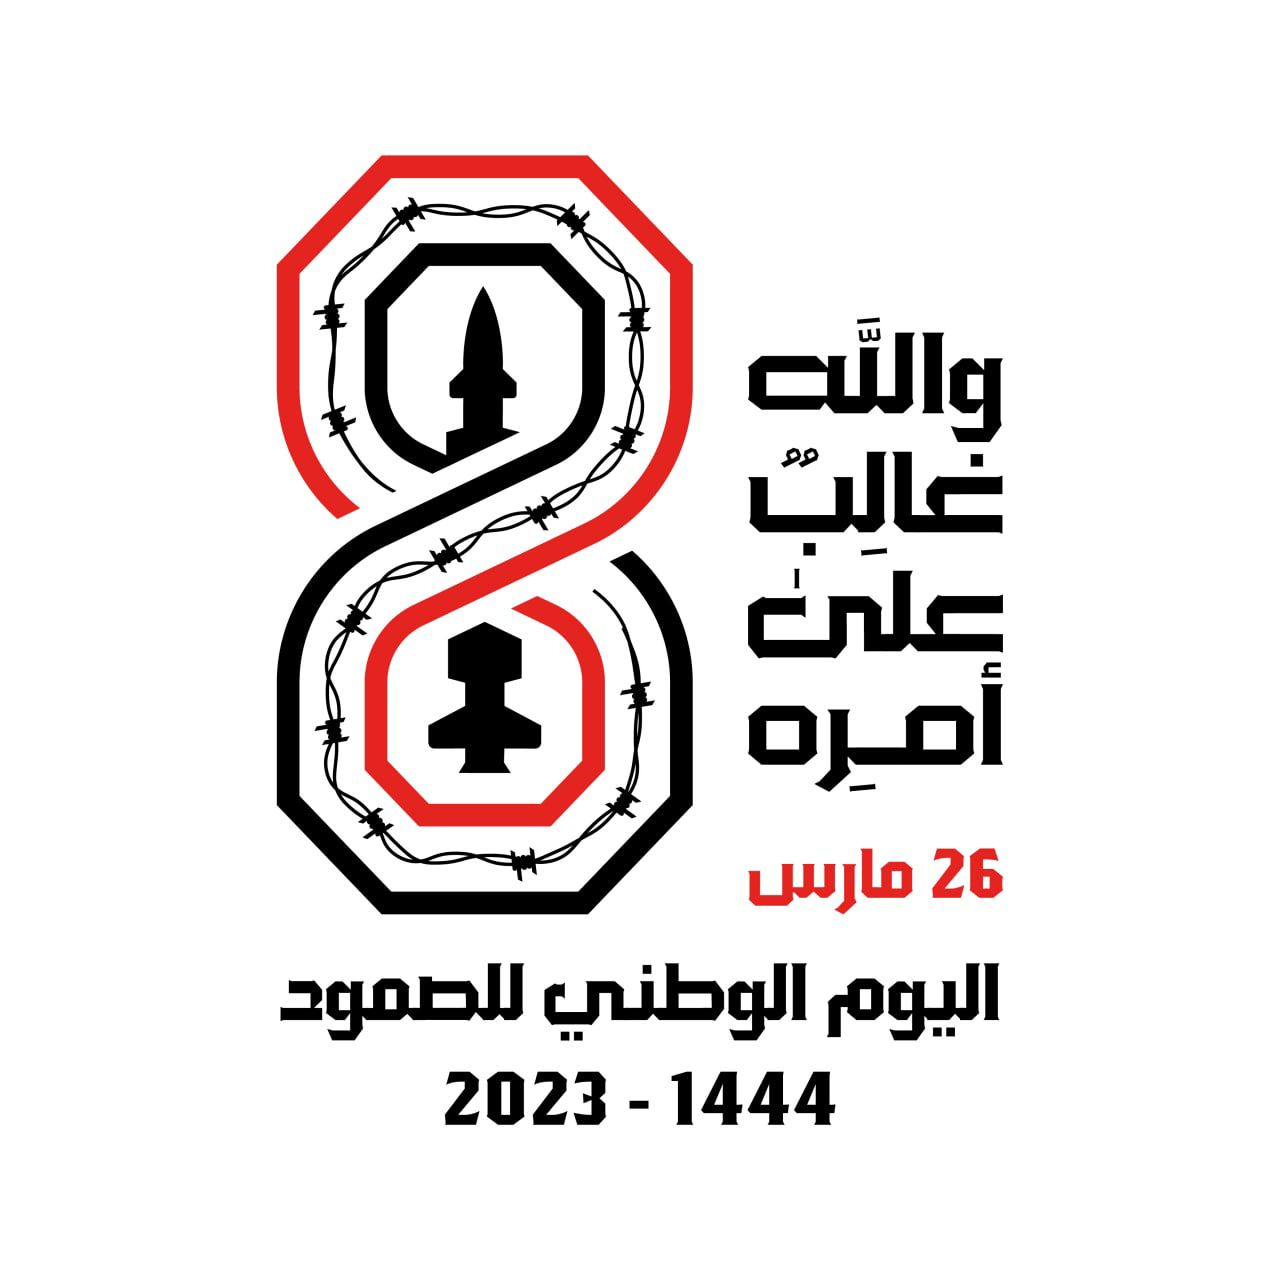 Organisationskomitee in Marib definiert Serwah- und Qaniyah-Plätze für die Märsche zum Nationalen Resilienztag